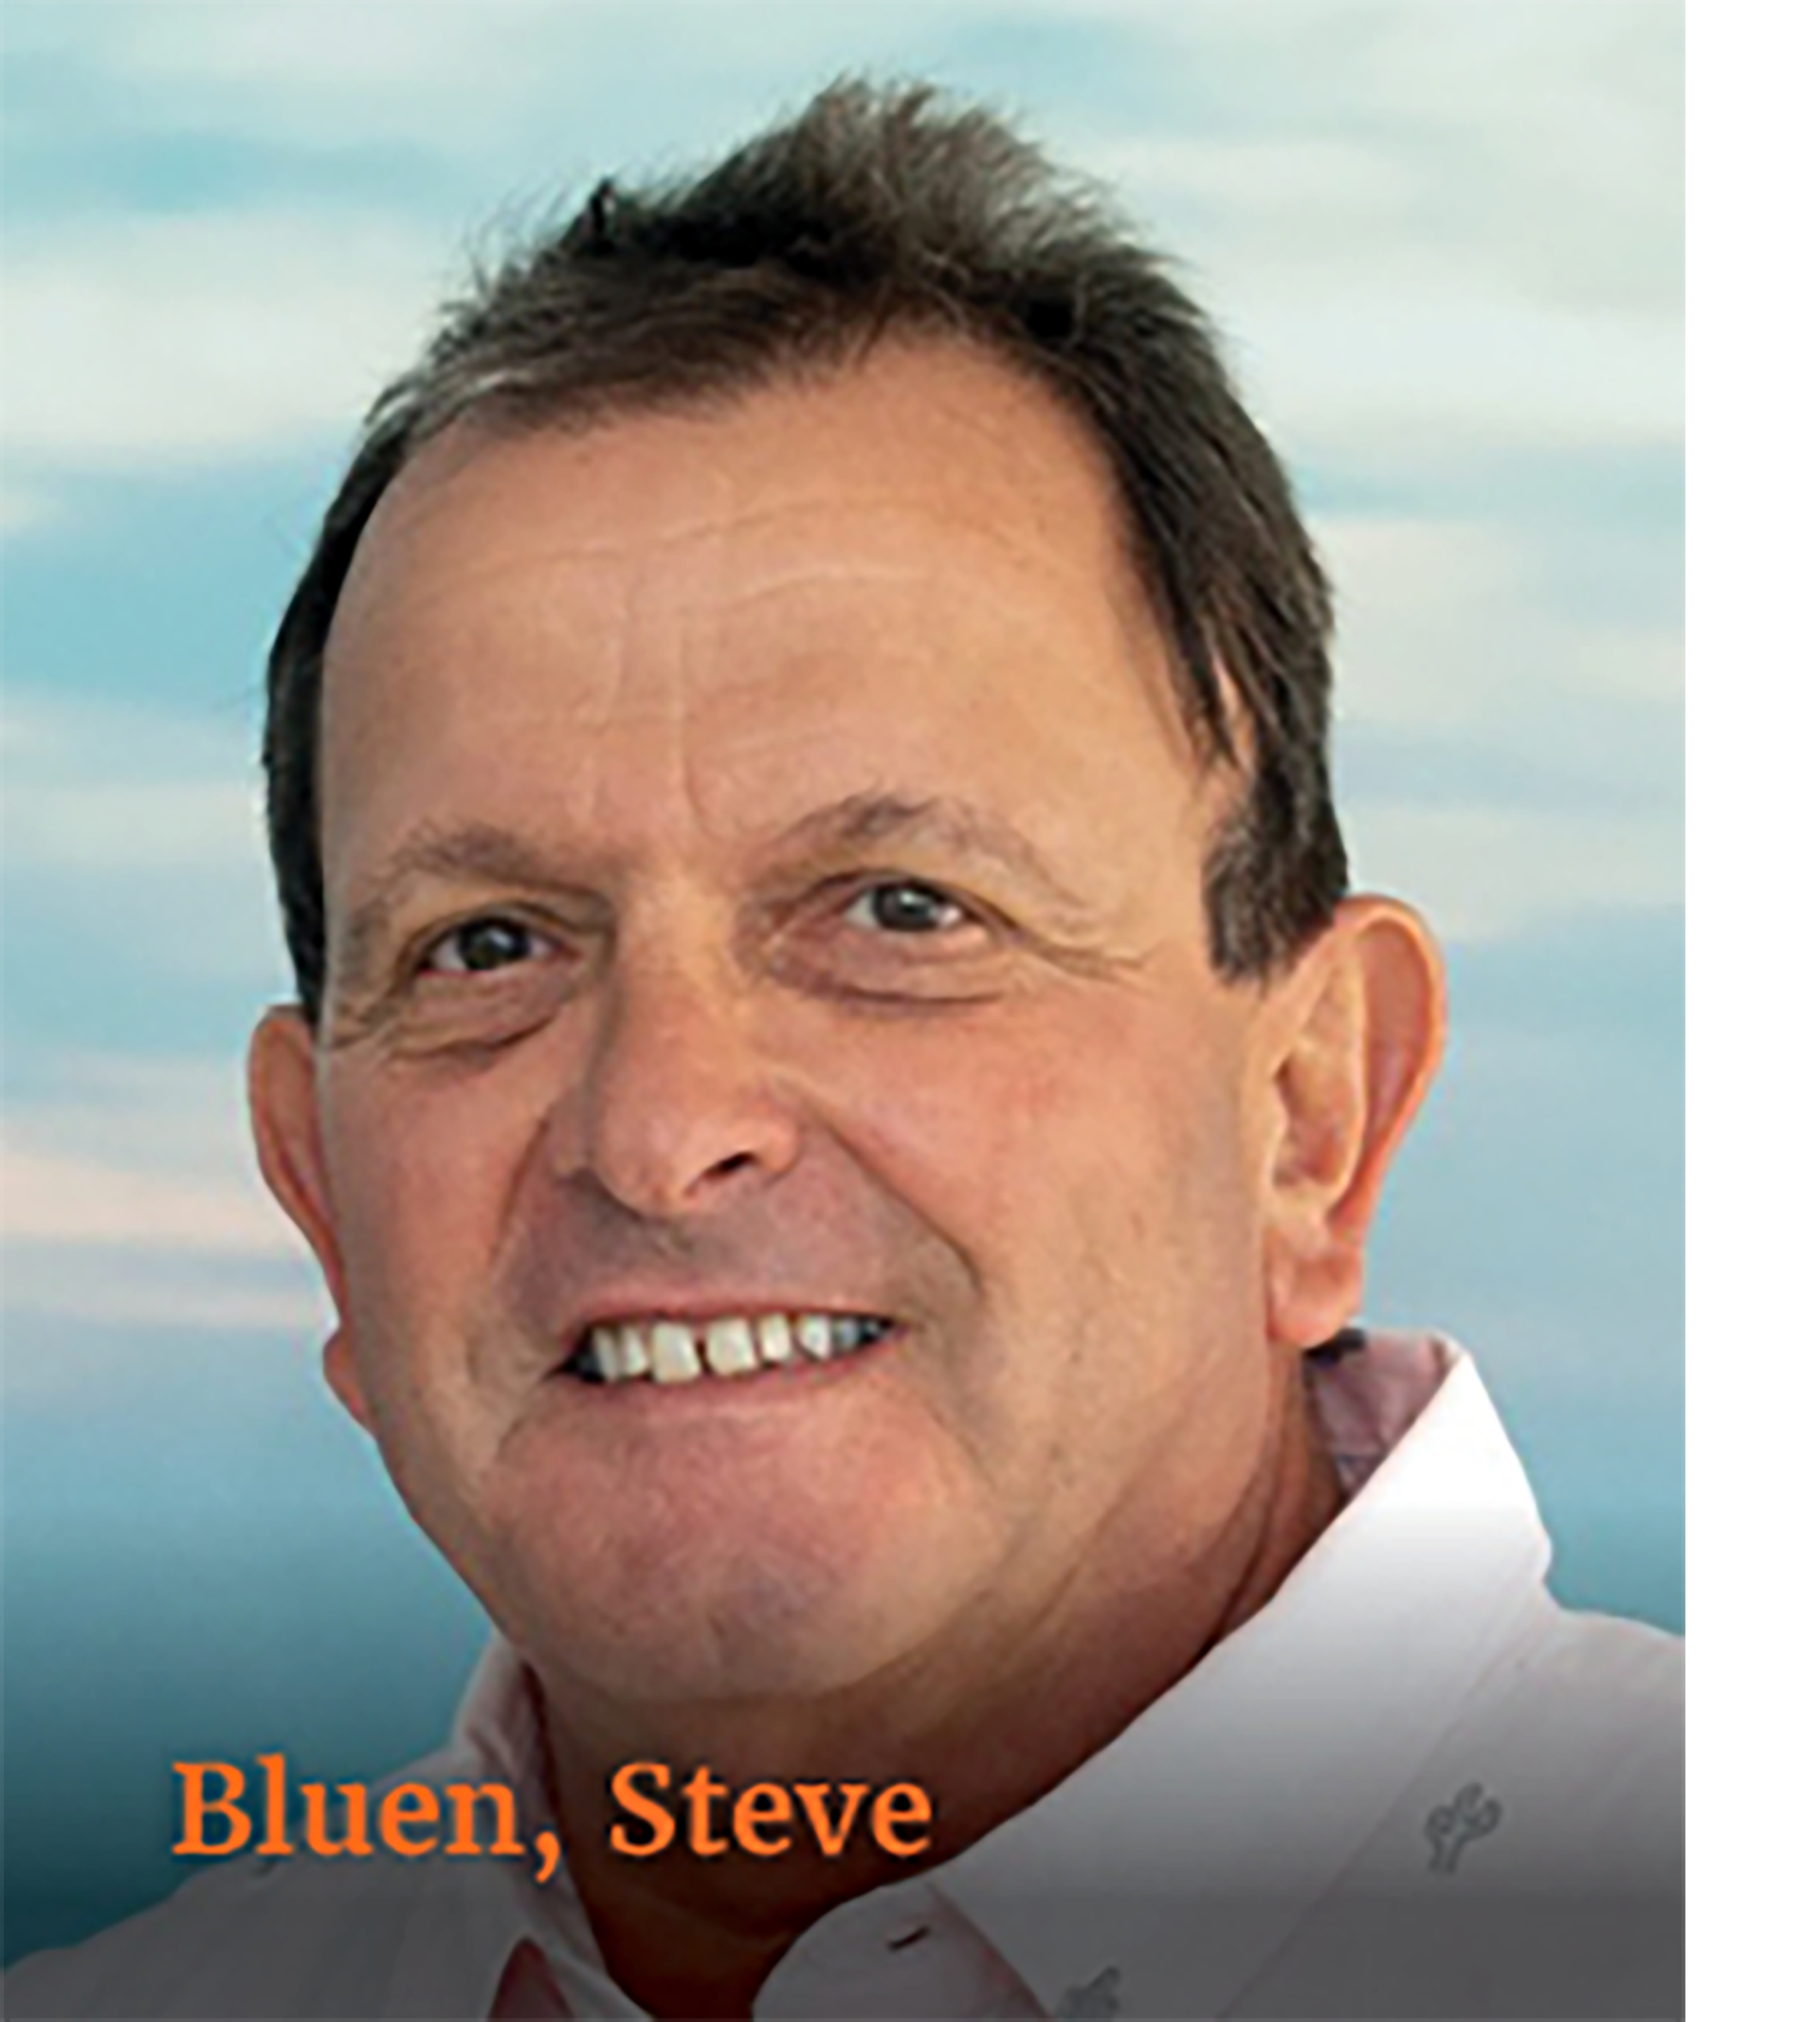 Bluen Steve